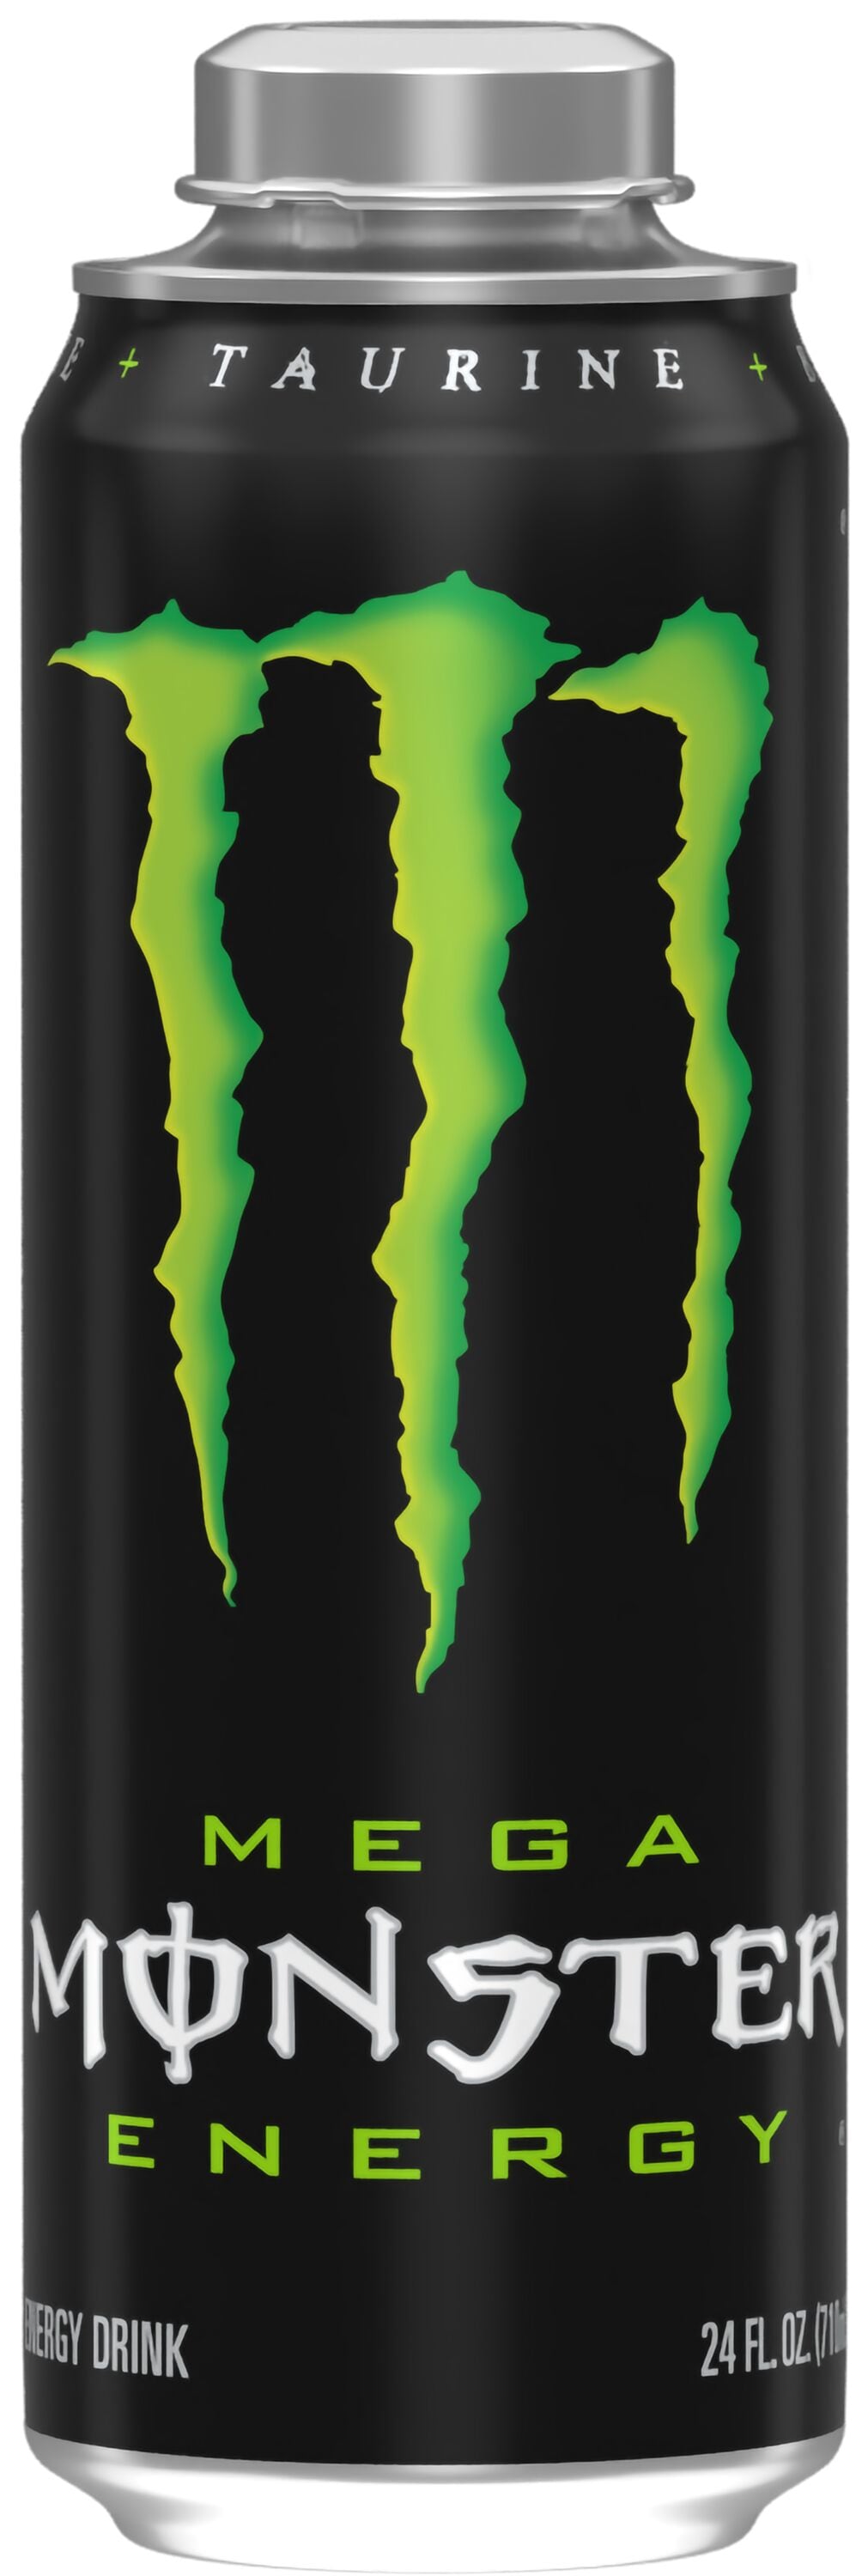 Monster Energy Drink - 24 cm - BIG - Aufnäher Shop / Patch - Shop